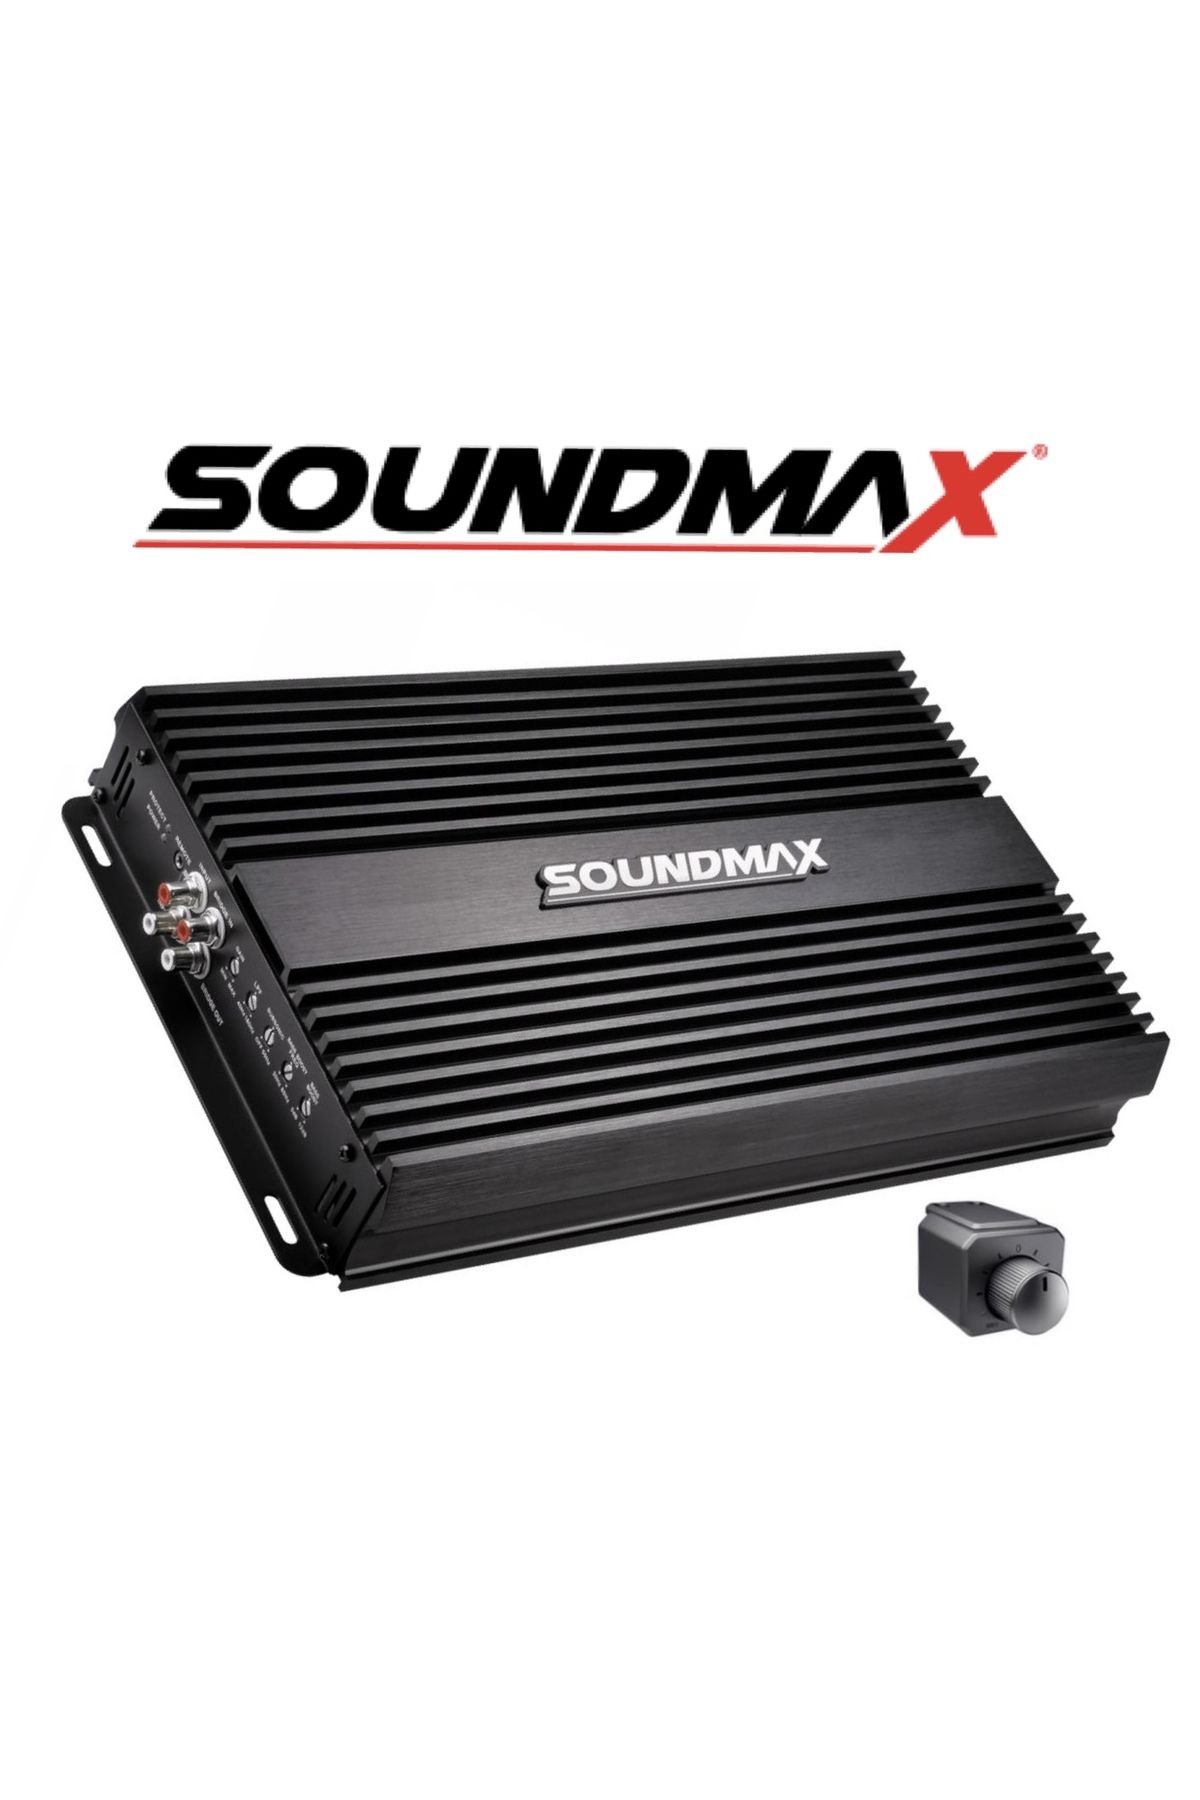 Soundmax Sx-4000.1d Mono Amfi Bas Amfisi 1ohm 4000rms- 2 Ohm 3000rms-4ohm 2000rms-bas Kontrollü